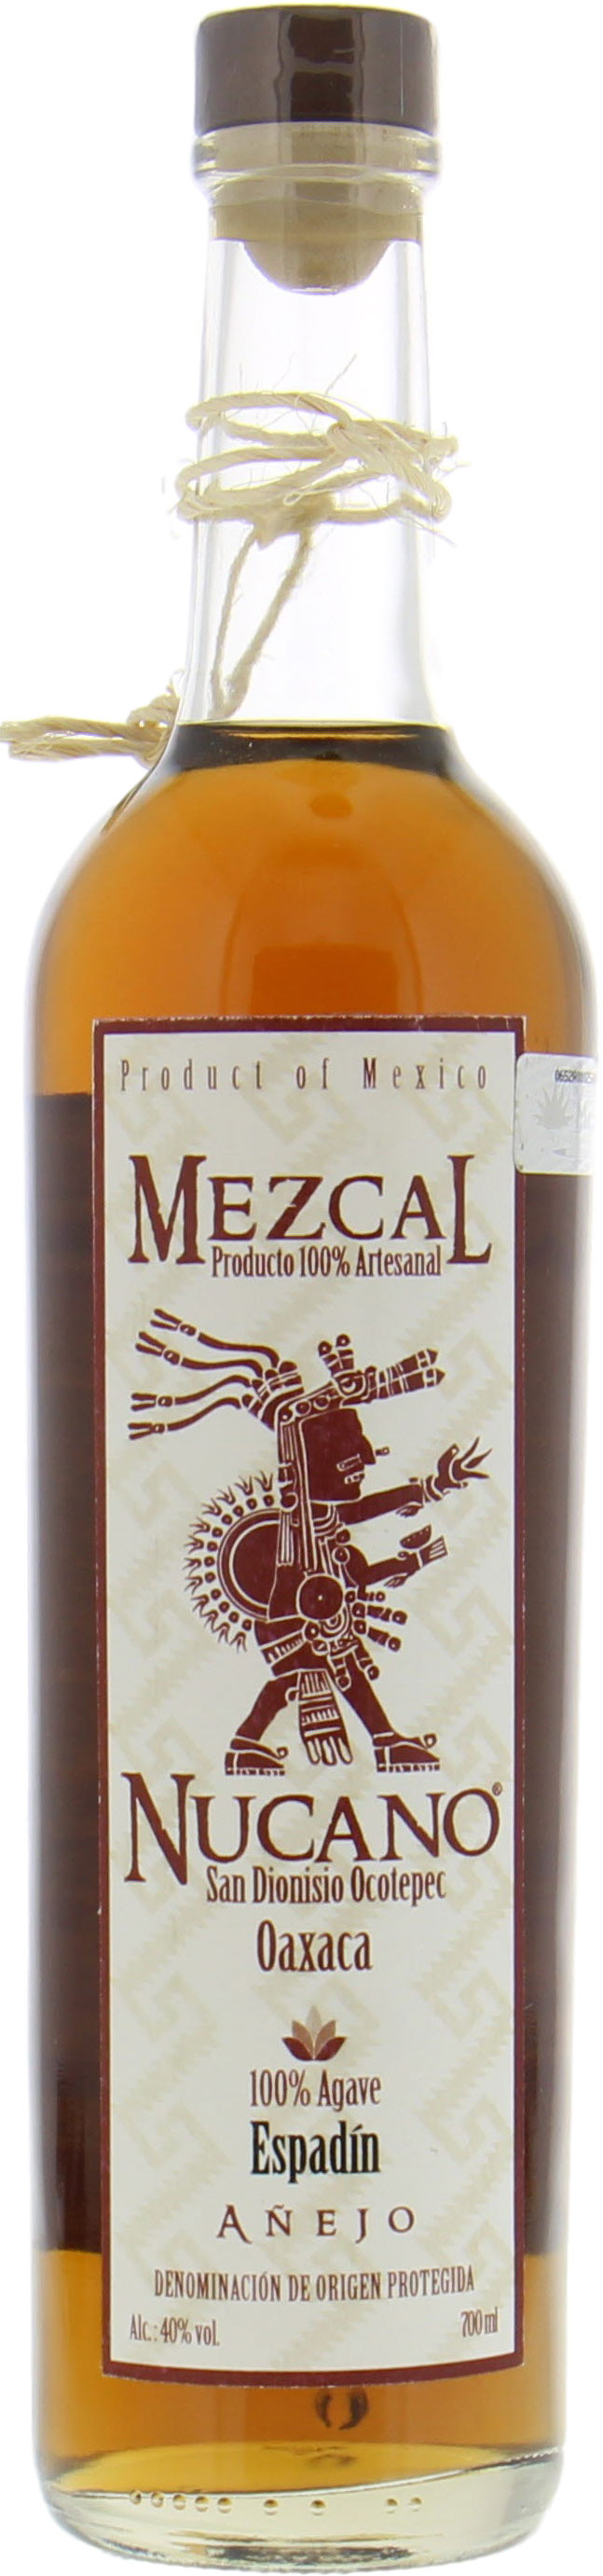 Nucano - Mezcal Nucano Espadin Anejo 100% Agave 40% NV